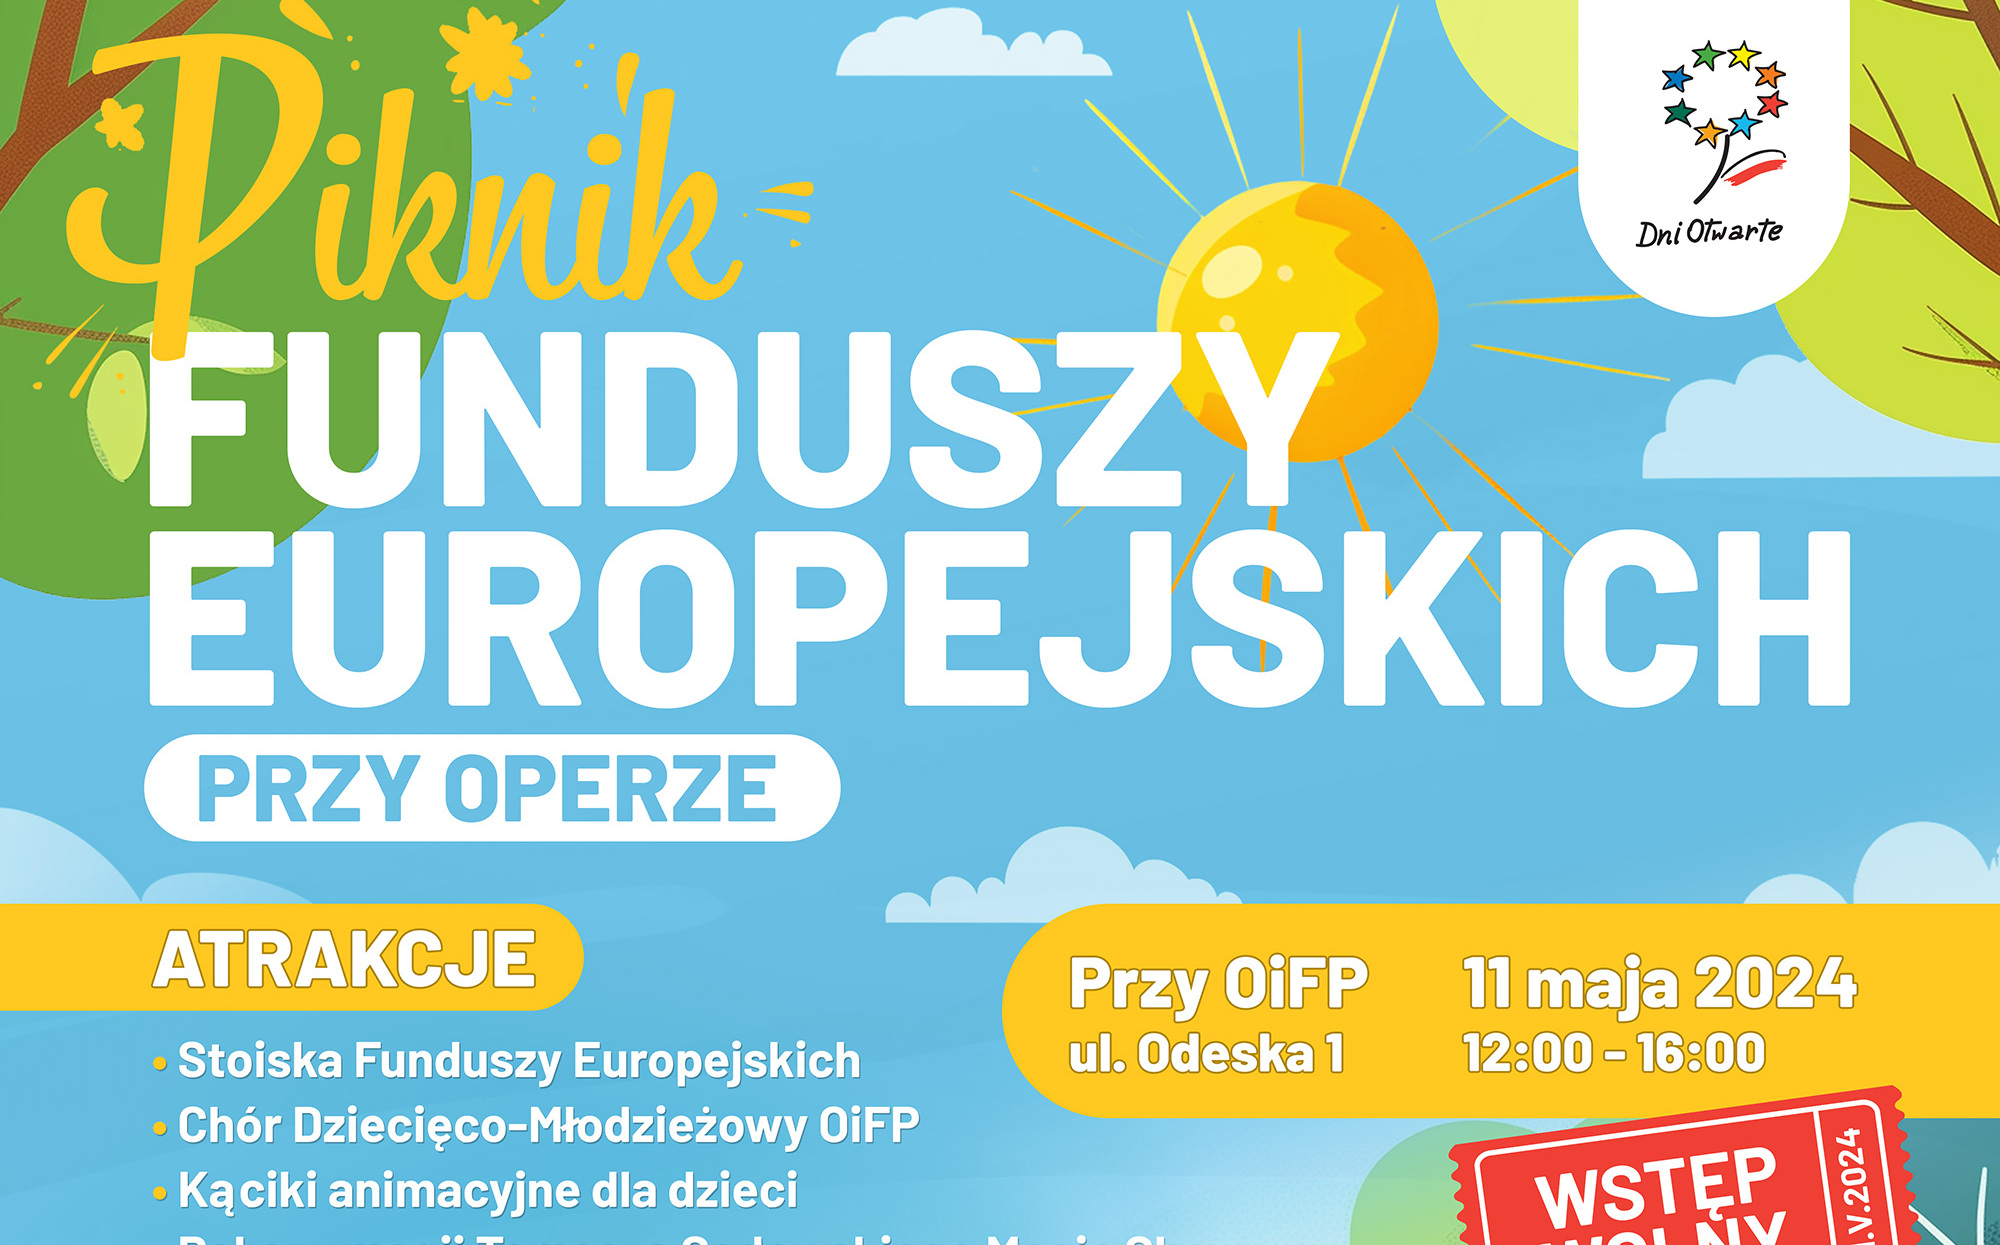 Piknik Funduszy Europejskich przy Operze już 11 maja!